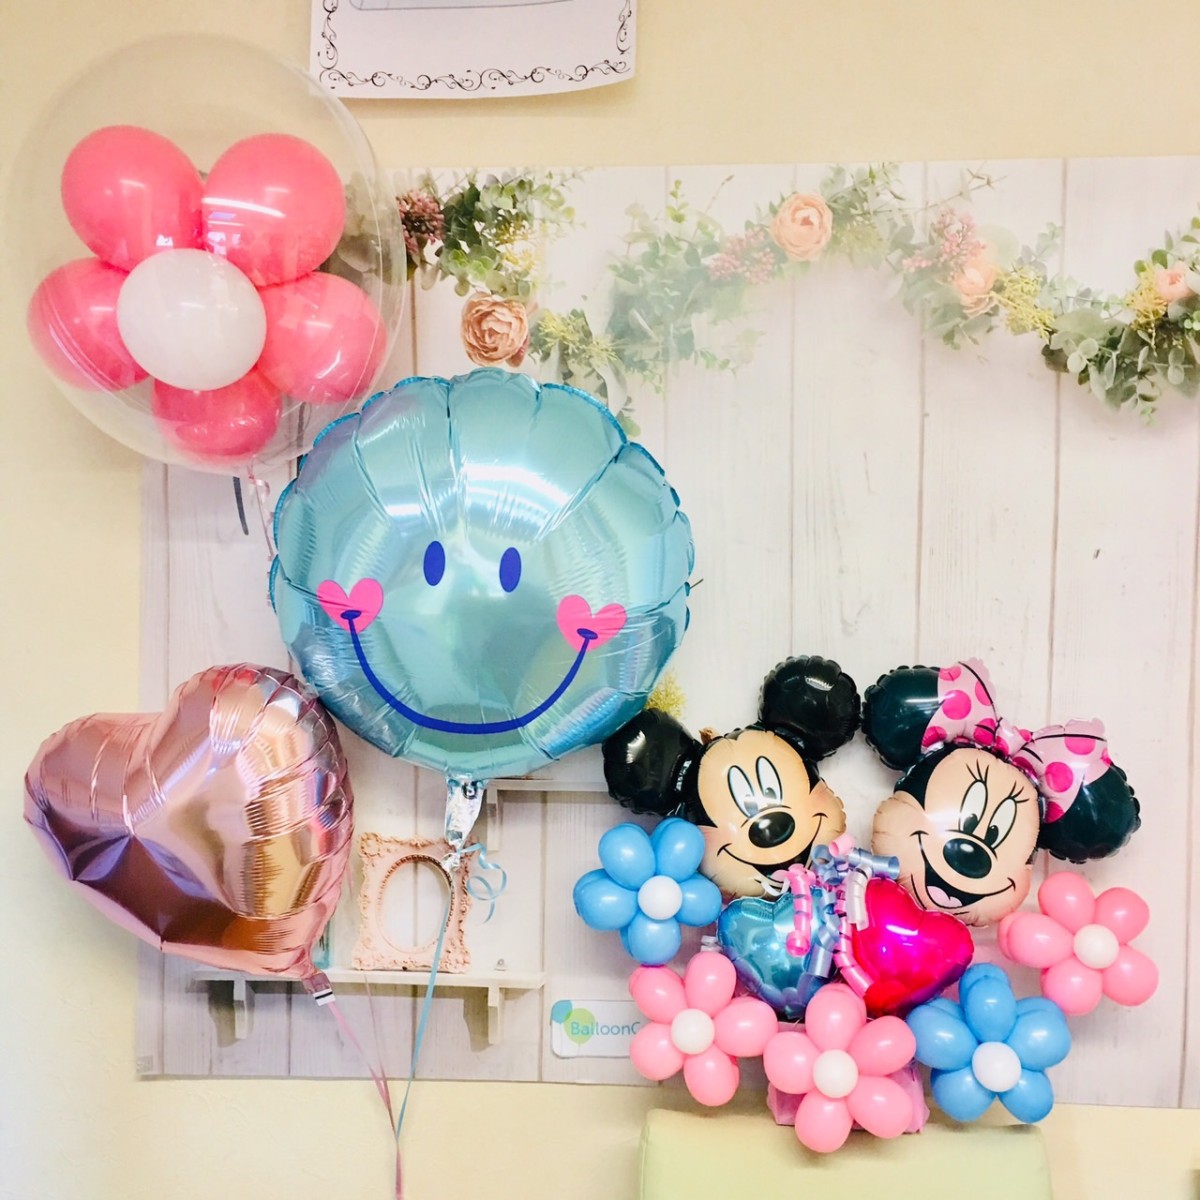 バルーン電報 ディズニーのミッキーミニーを福島県の結婚式場にお届けします バルーンコネクション